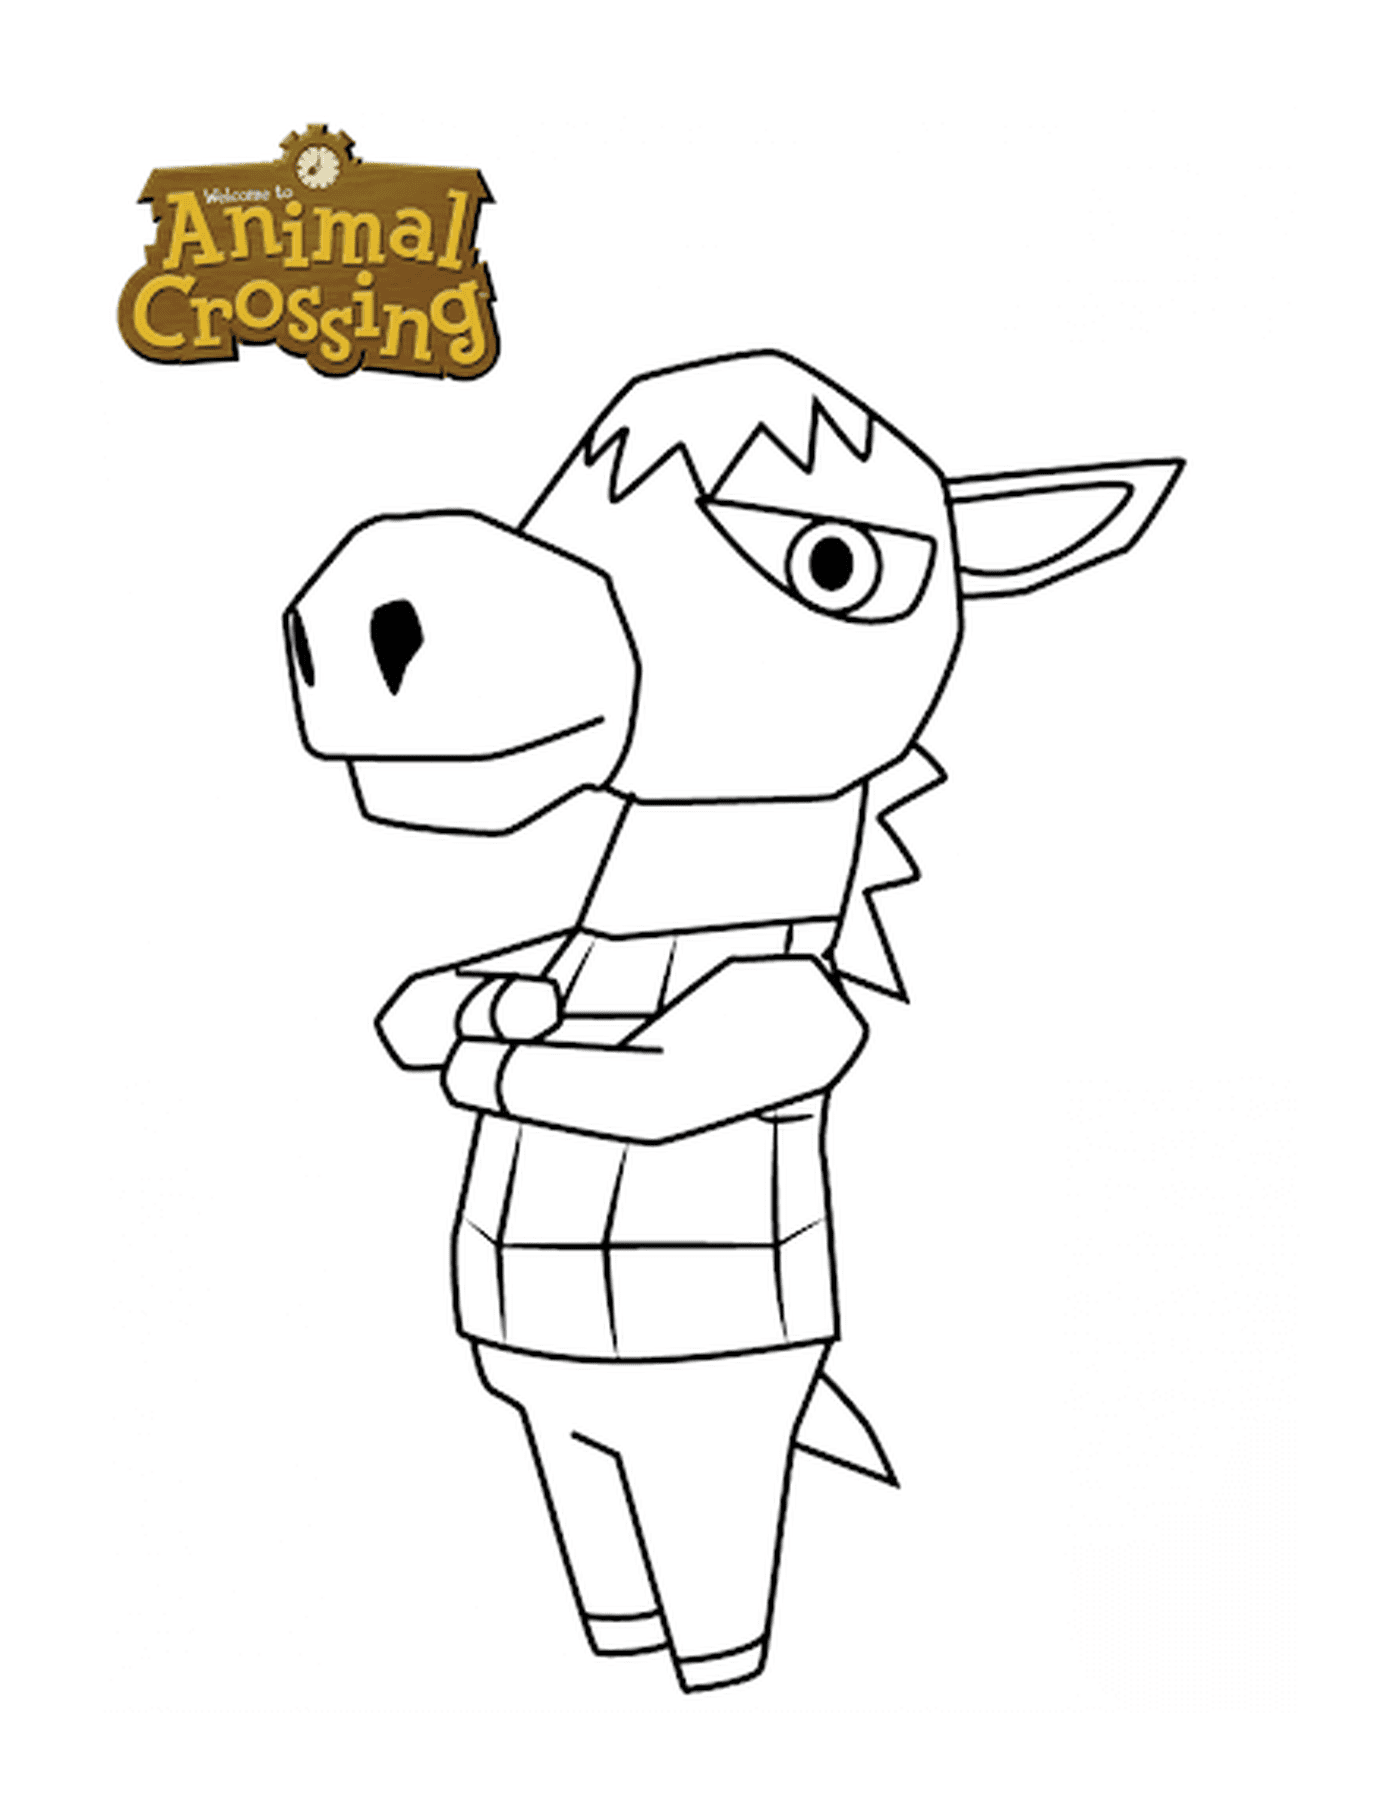   Âne d'Animal Crossing, animal avec un costume 